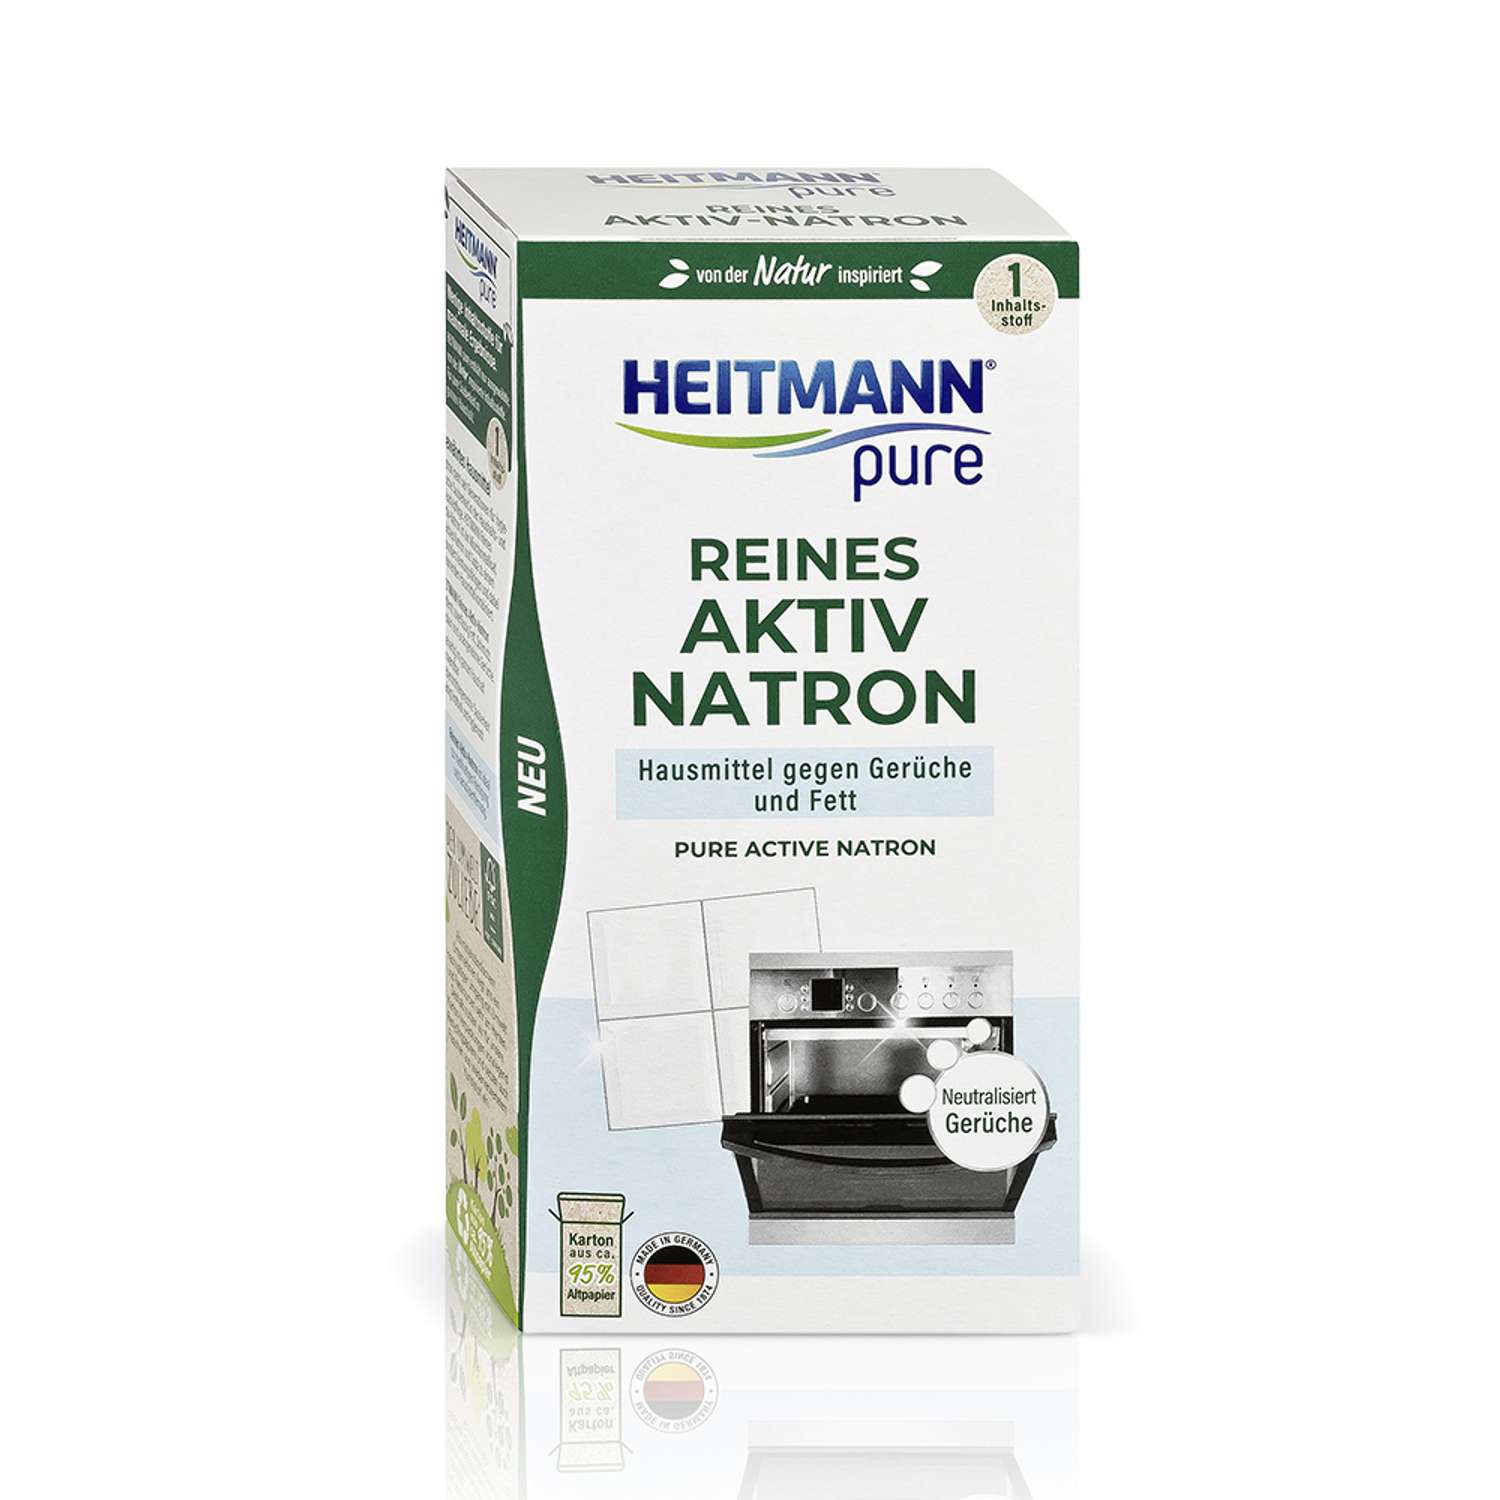 Содовый очиститель Heitmann Reines Aktiv Natron 350г - фото 1